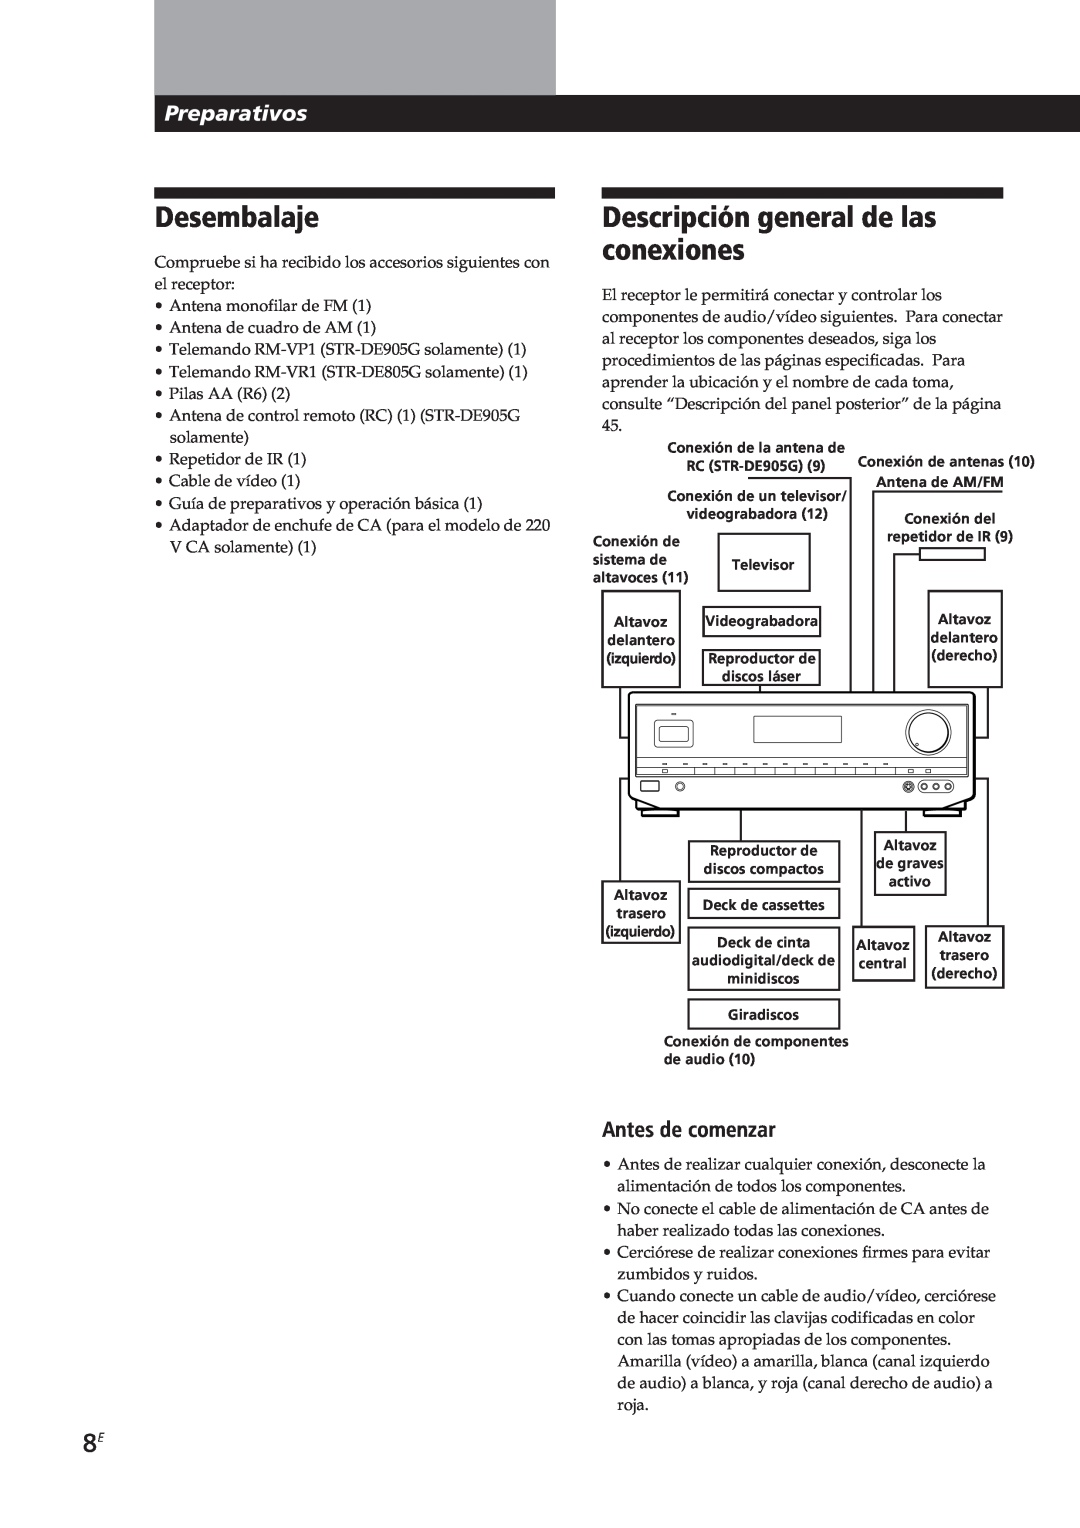 Sony STR-DE905G, STR-DE805G manual Desembalaje, Descripción general de las conexiones, Preparativos, Antes de comenzar 